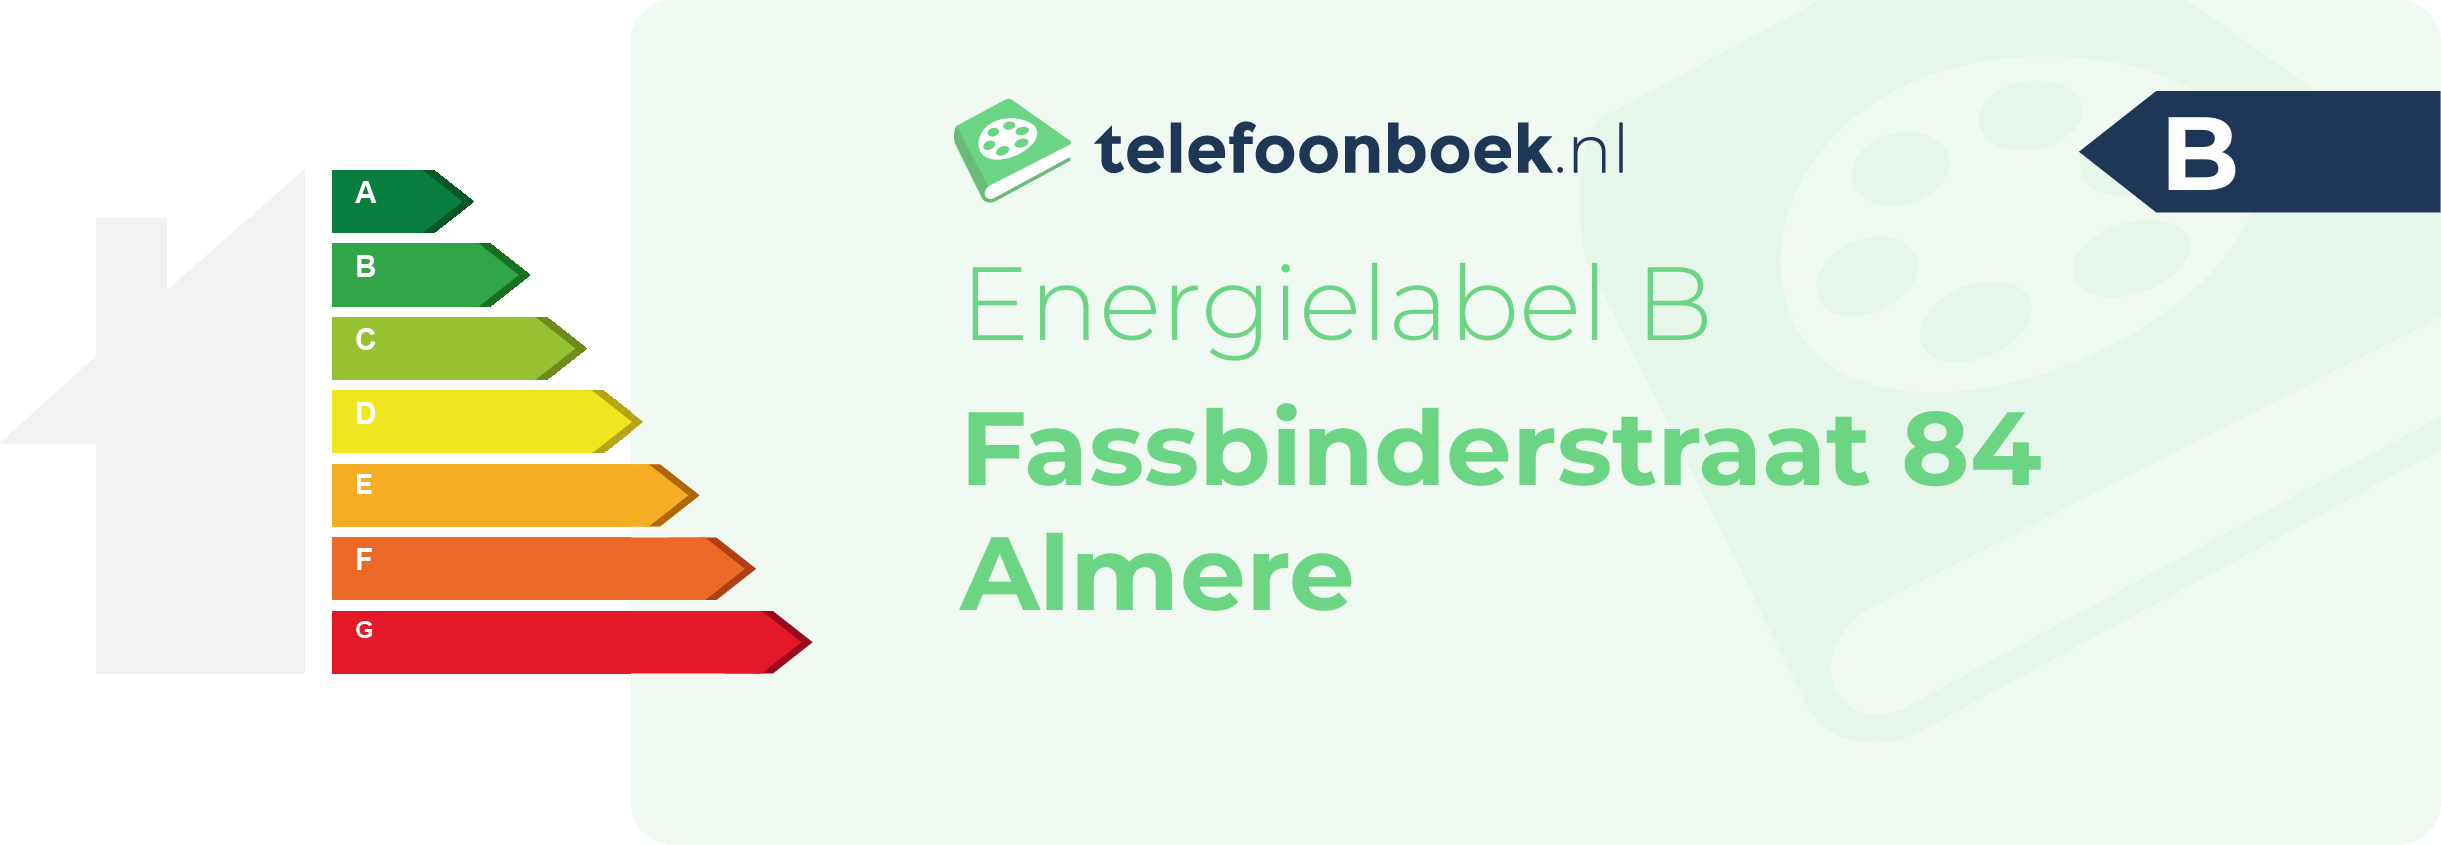 Energielabel Fassbinderstraat 84 Almere